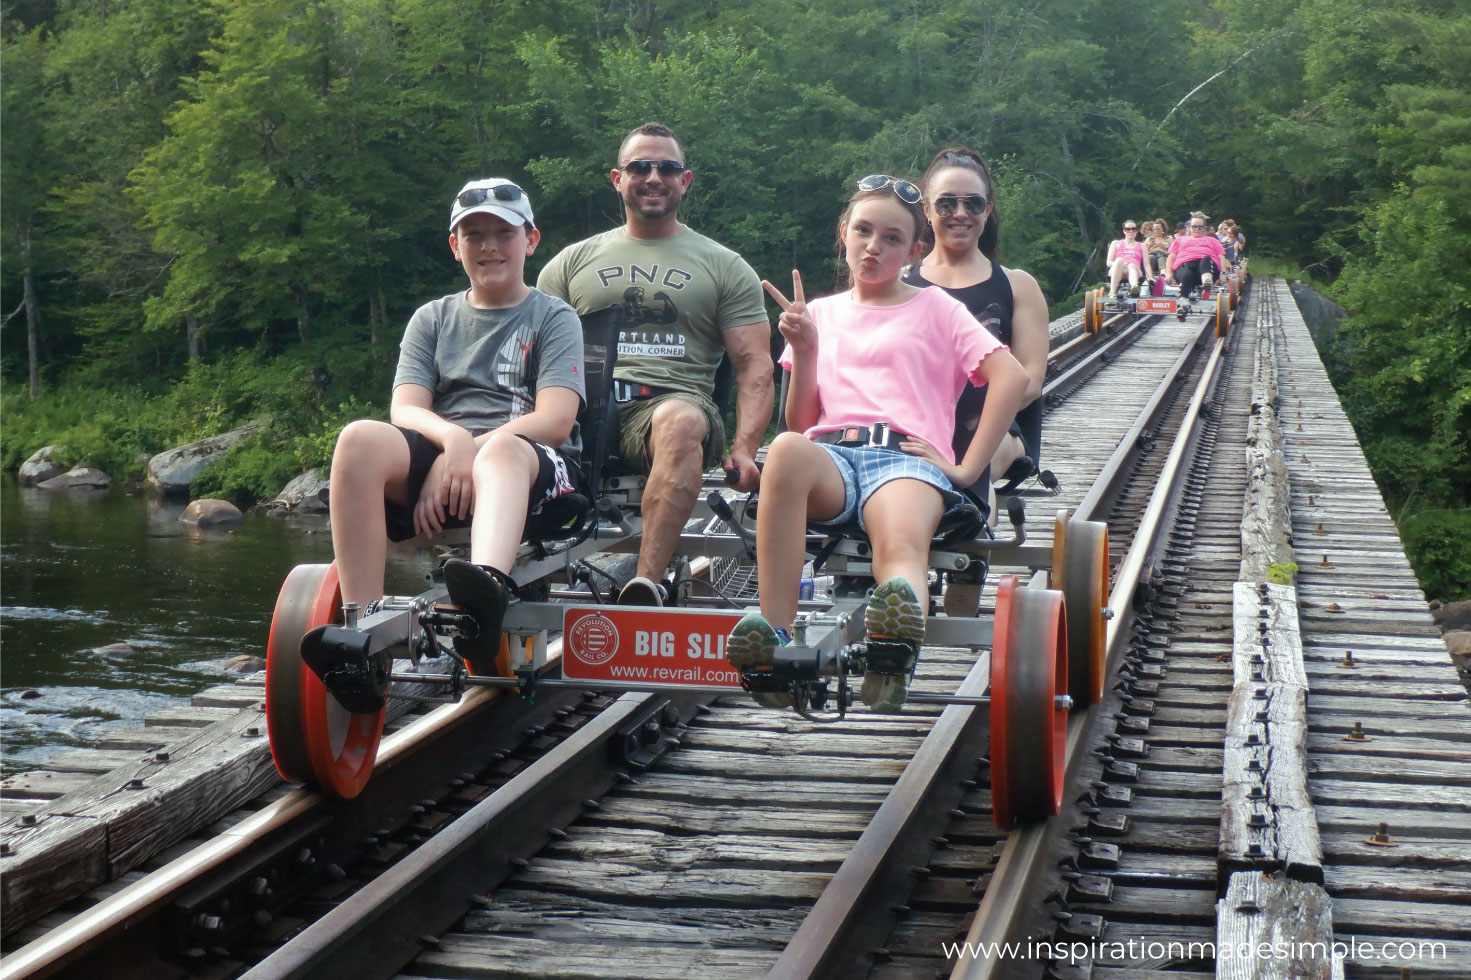 Railbiking in the Adirondacks